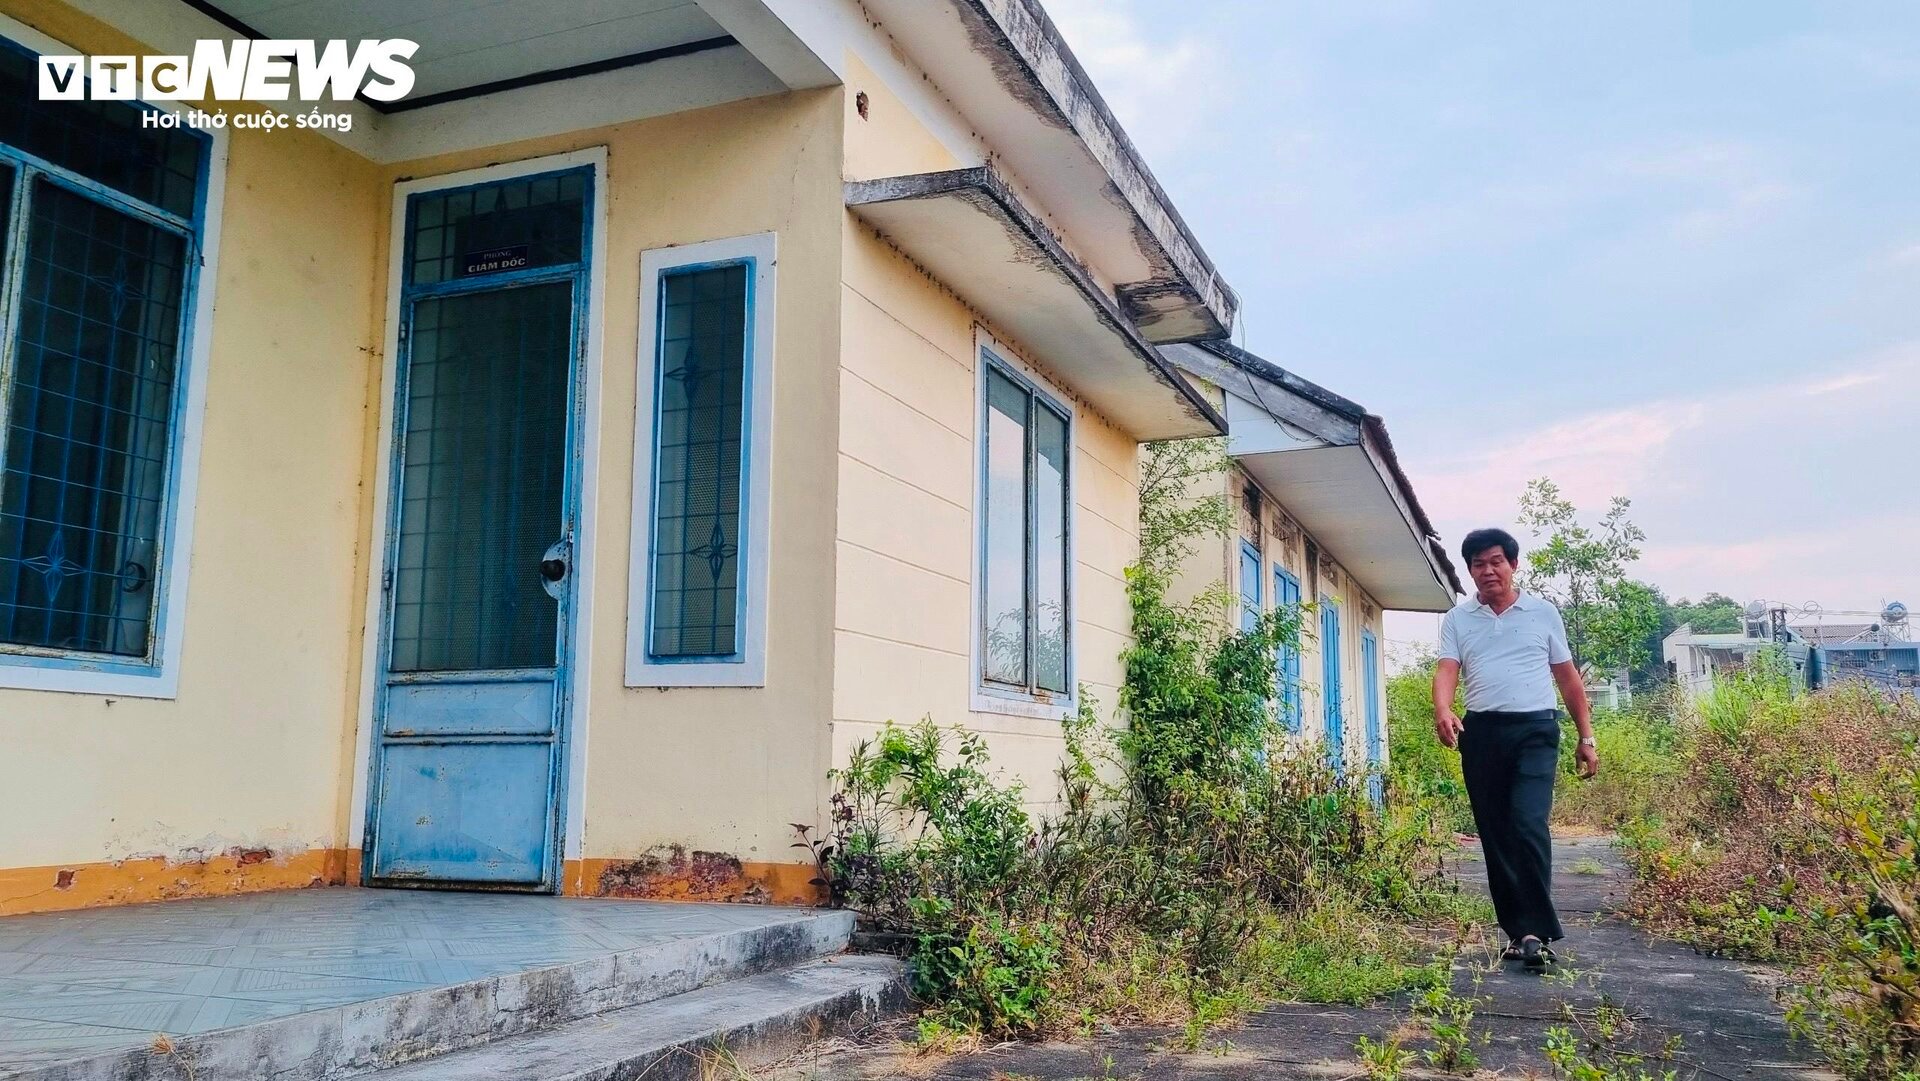 Thảm cảnh ở Cty lâm nghiệp Trà Tân: Giám đốc bị nợ lương 10 năm, trụ sở đổ nát- Ảnh 3.